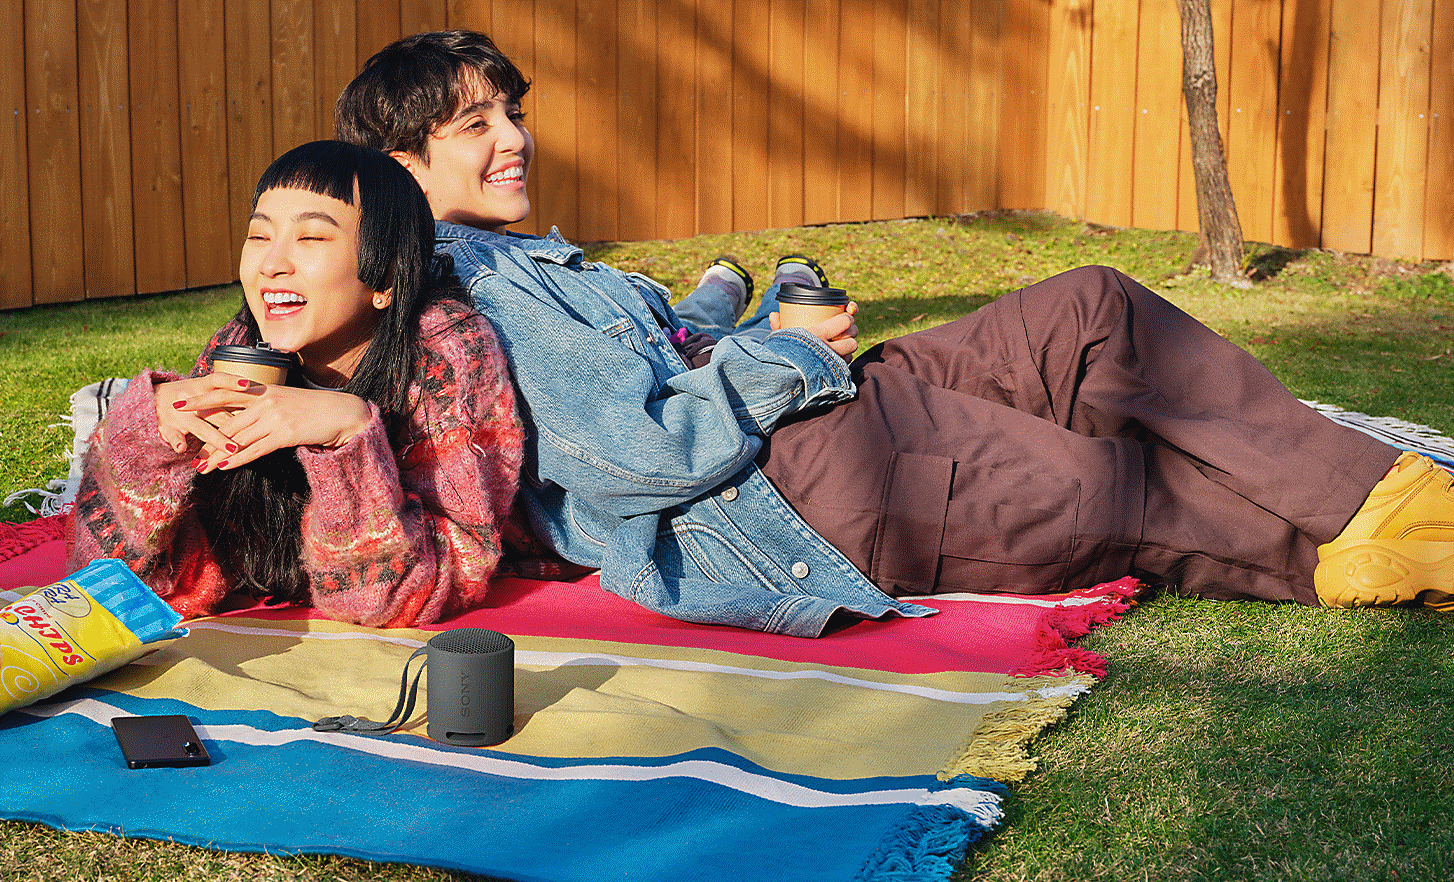 Zdjęcie dwóch osób leżących obok siebie na kocu w ogrodzie i słuchających muzyki z czarnego głośnika SRS-XB100